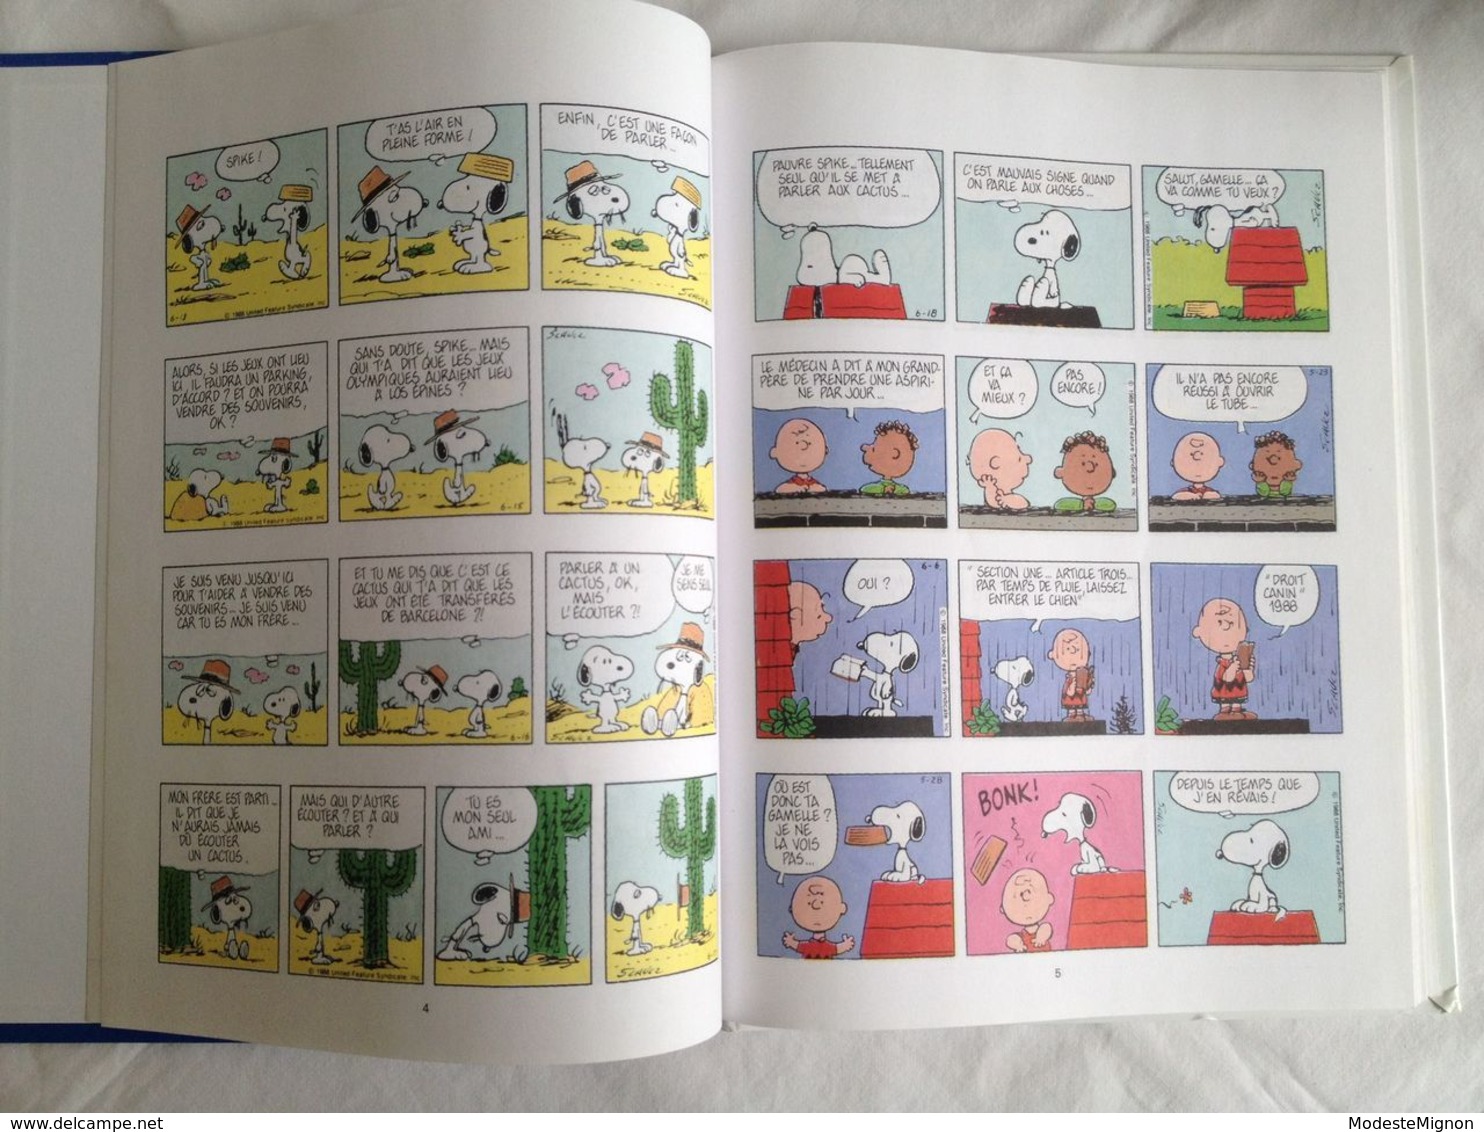 Snoopy Prend De La Hauteur De Schulz. Edition Spécialement Réalisée Par Les Editions Delville Pour Esso / Dargaud, 1999 - Snoopy